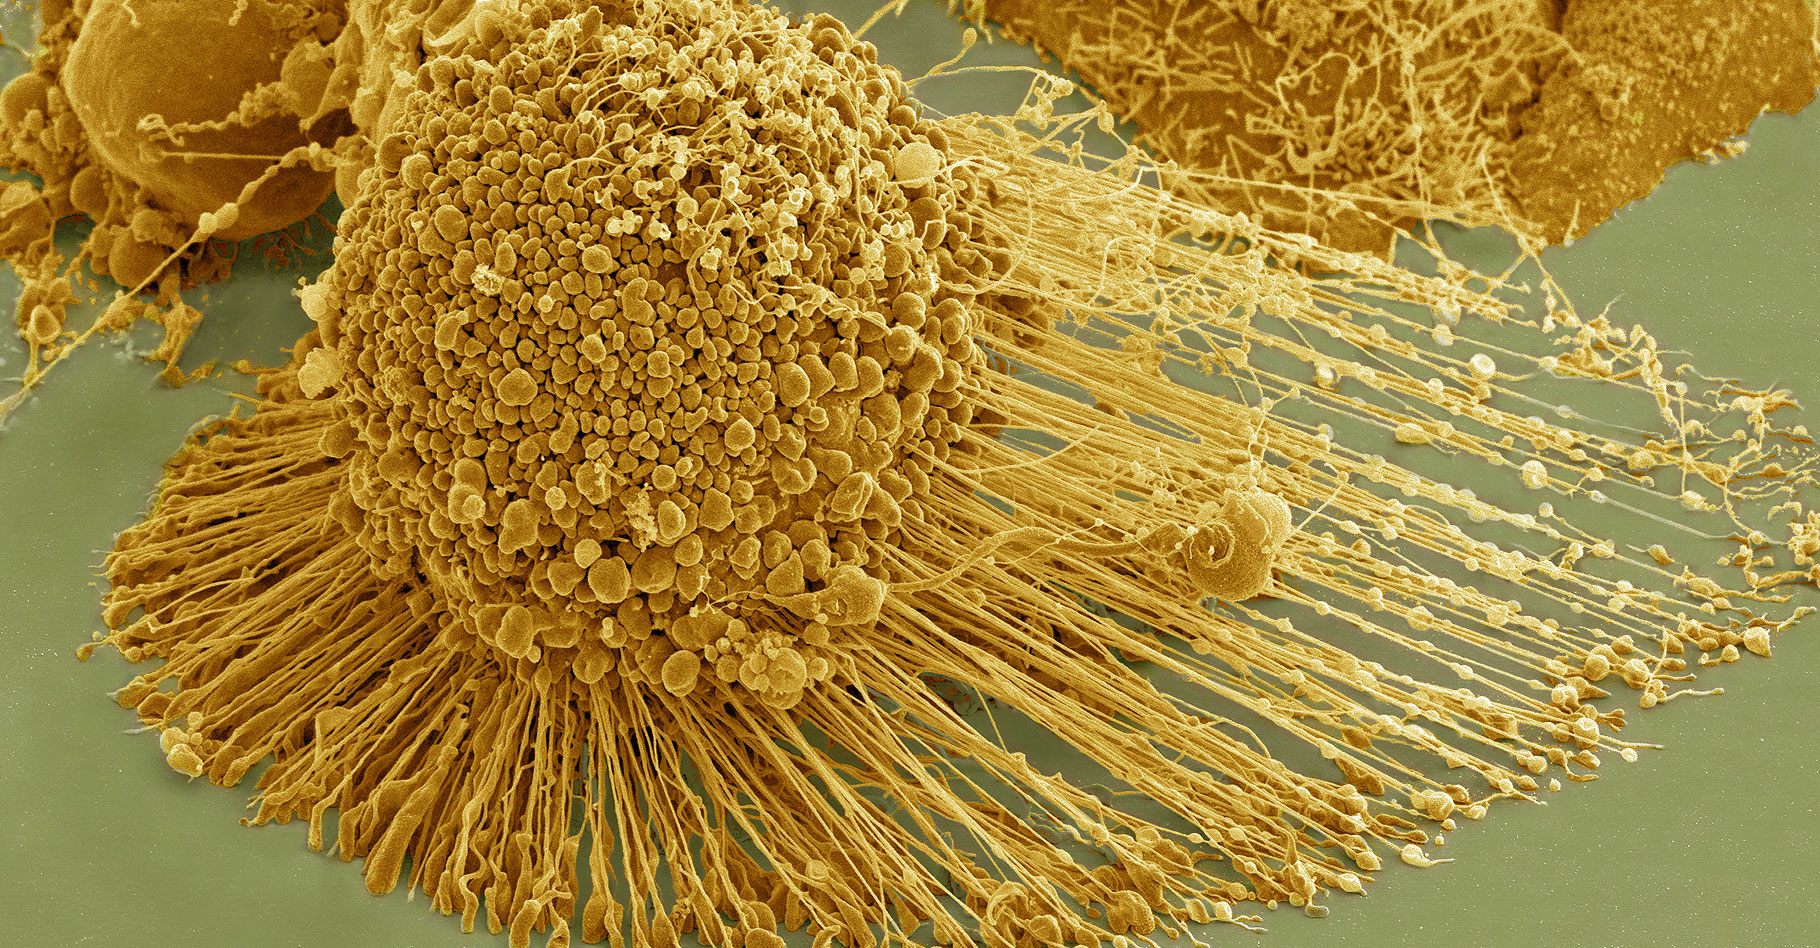 Cellules HeLa observées au microscope électronique à balayage. © National Institutes of Health (NIH) - Domaine public